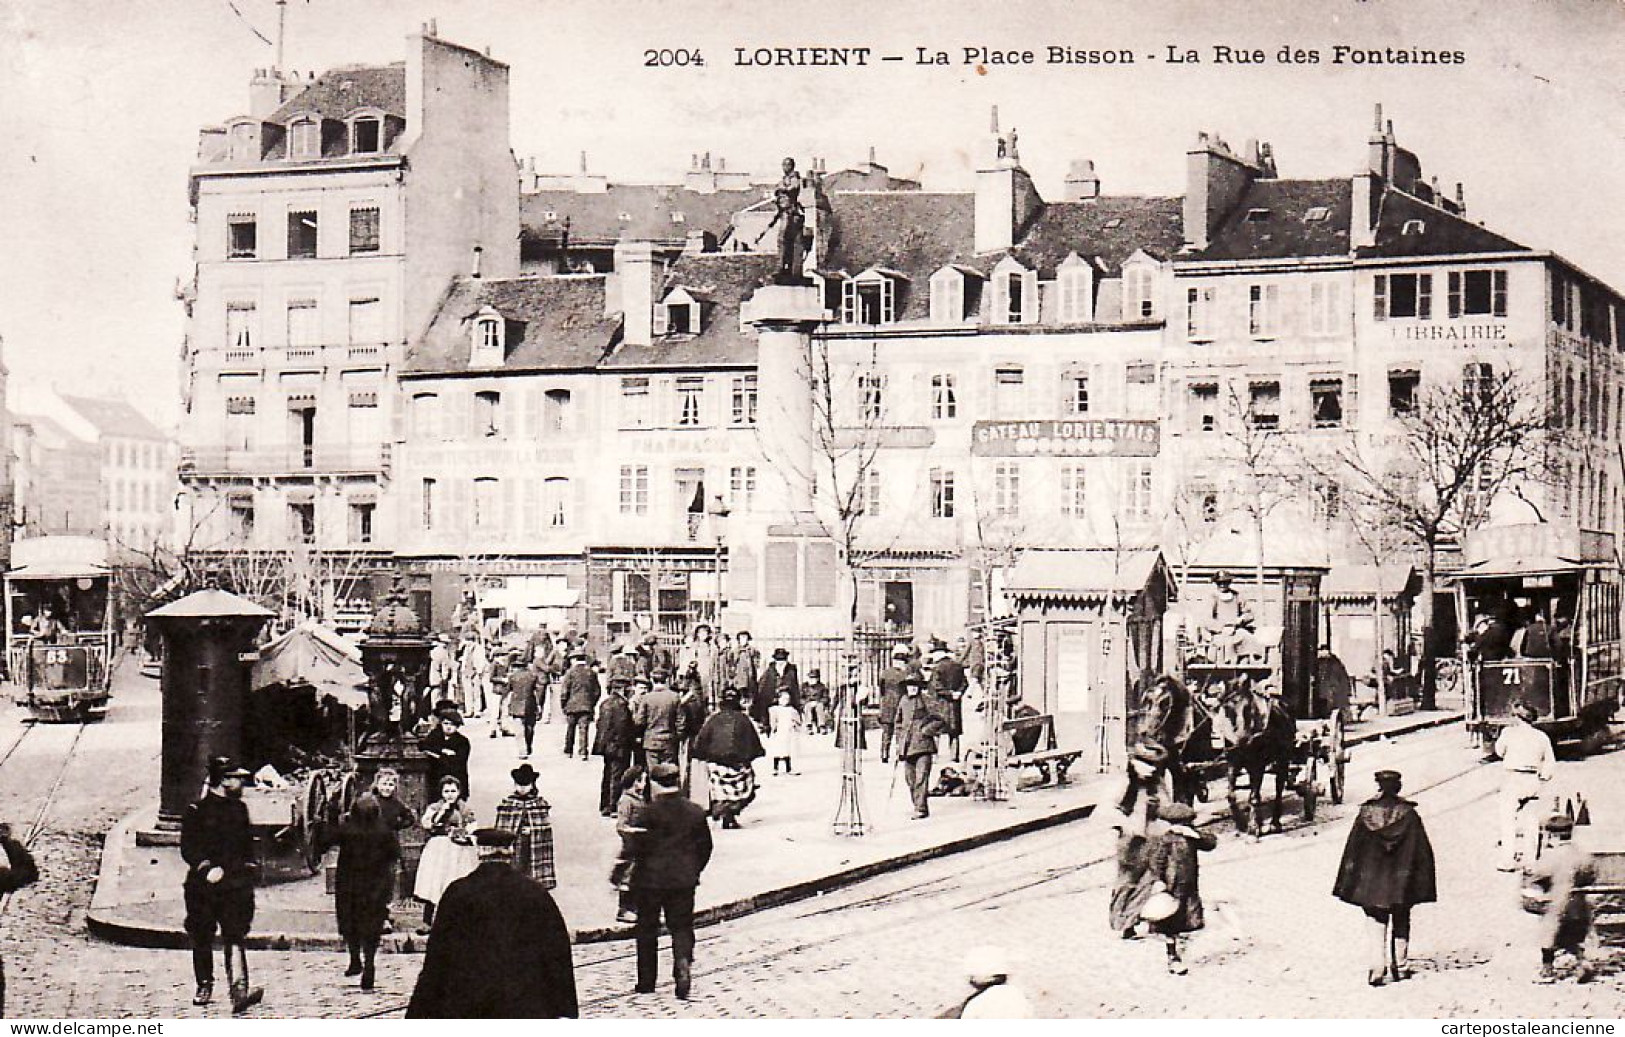 10565 ● LORIENT Place BISSON Rue Des FONTAINES 1904 à JOUBART Théatre Opéra Comique Rue Favart Paris-N°2004 Morbihan - Lorient